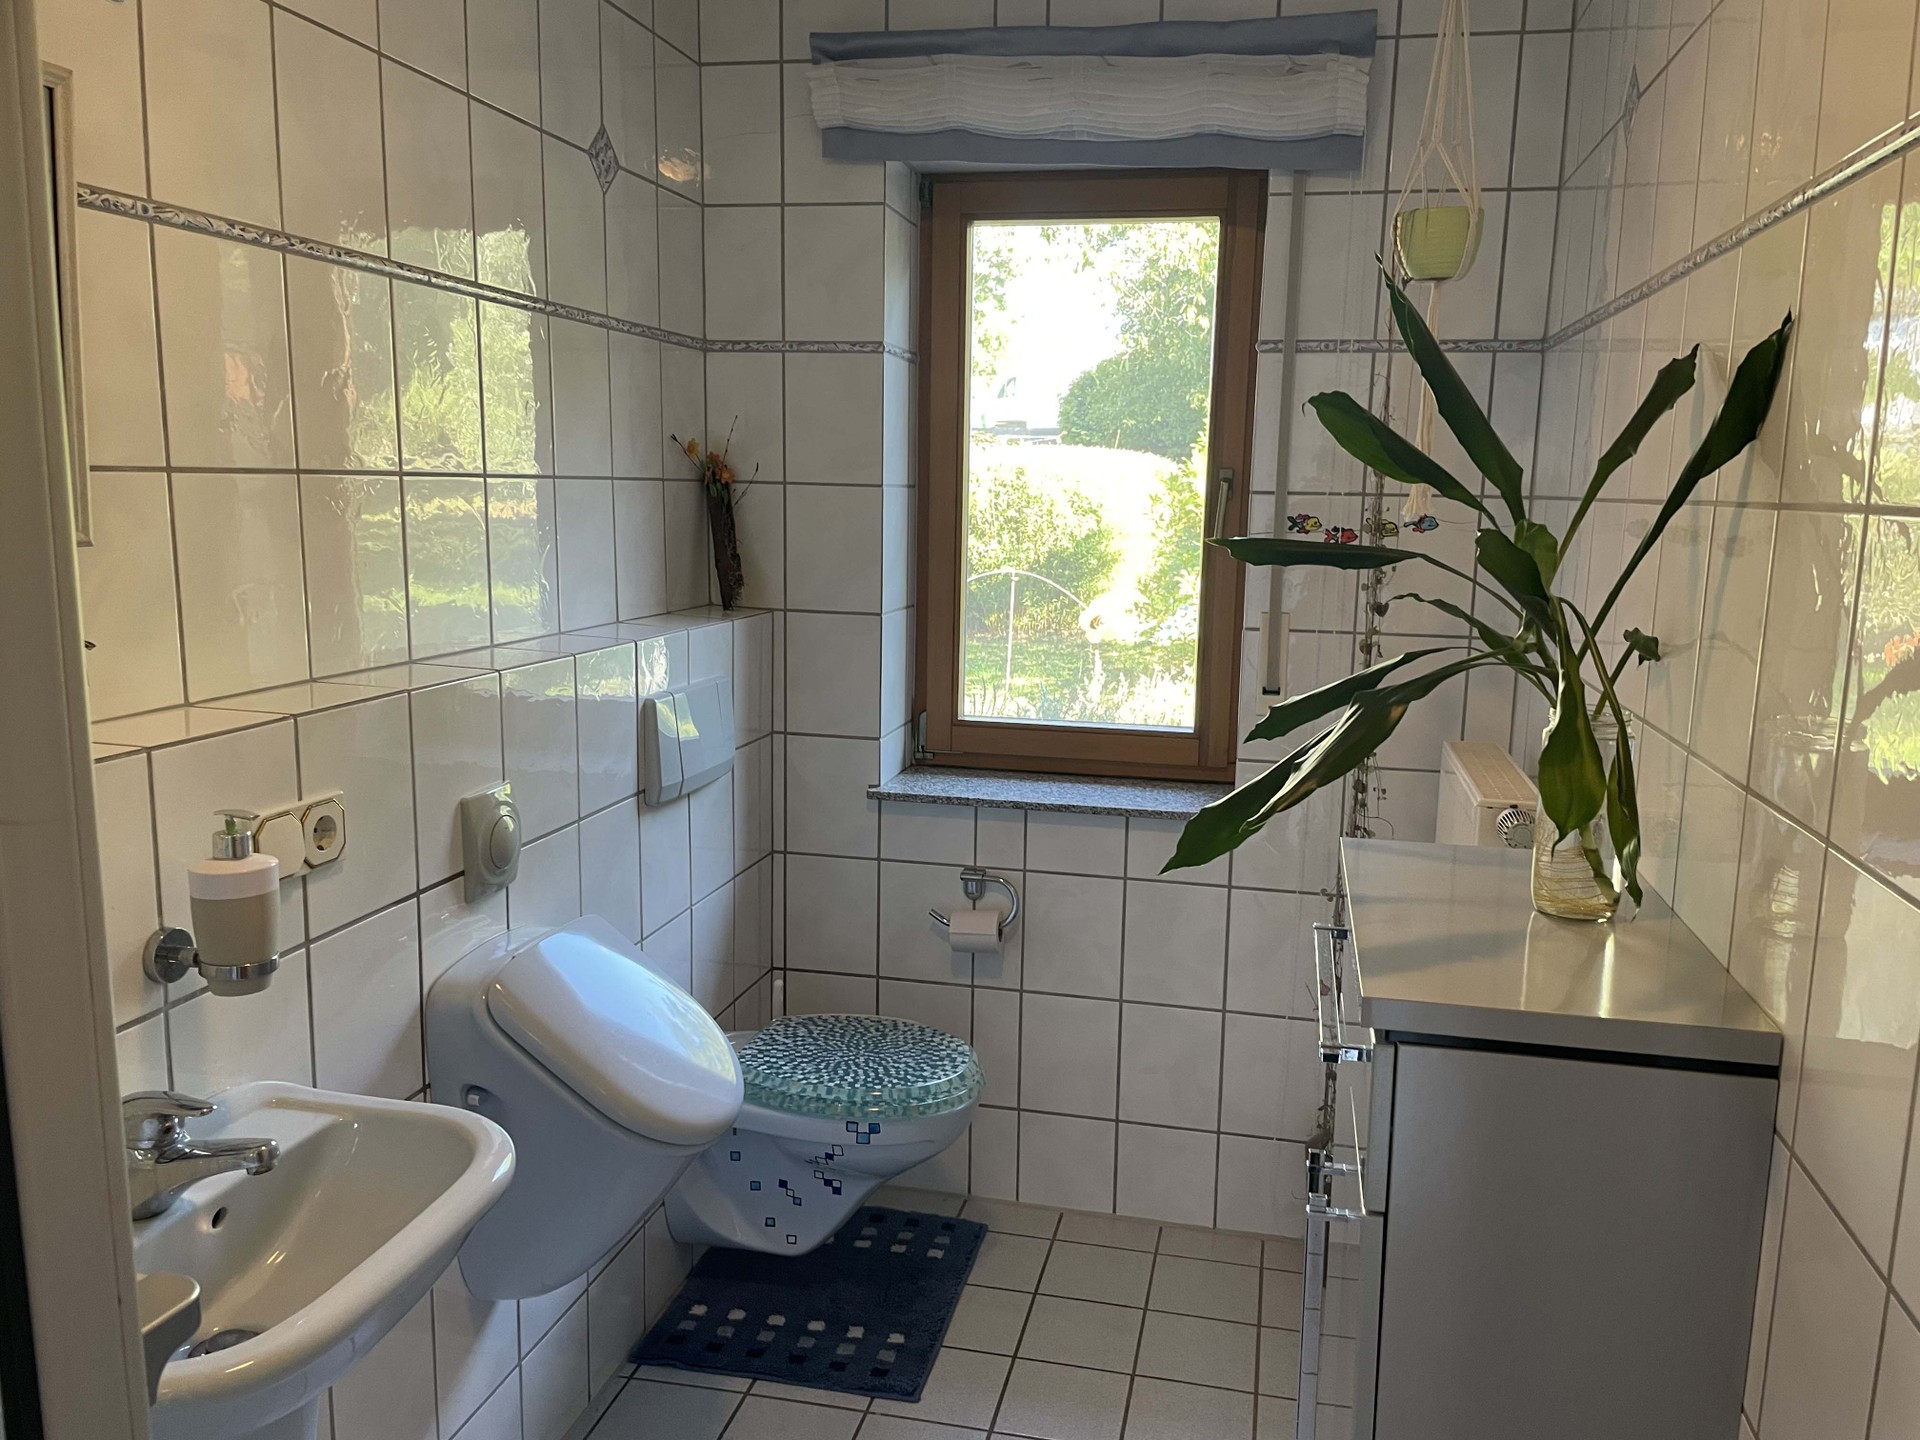 Haus in Hünfeld - Gäste-WC